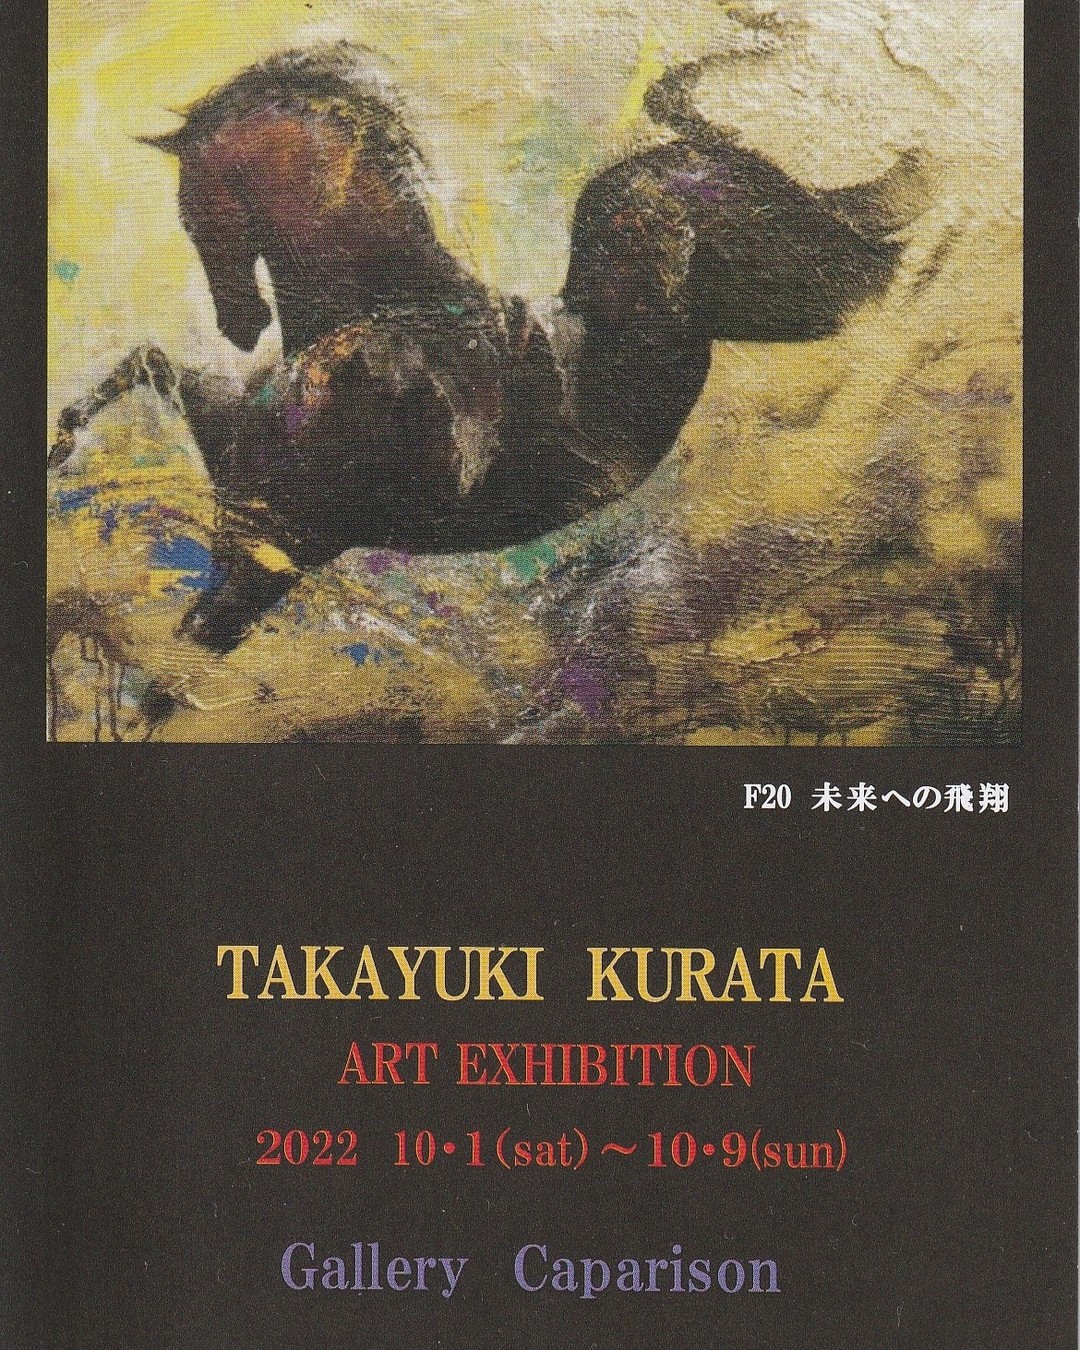  当カフェに隣接するギャラリーにて「倉田タカユキ作品展」が開催されています。10月9日（日）までとなりますので、どうぞお立ち寄りください。#ギャラリー#カフェオランジュ #倉田タカユキ #三鷹カフェ #吉祥寺カフェ